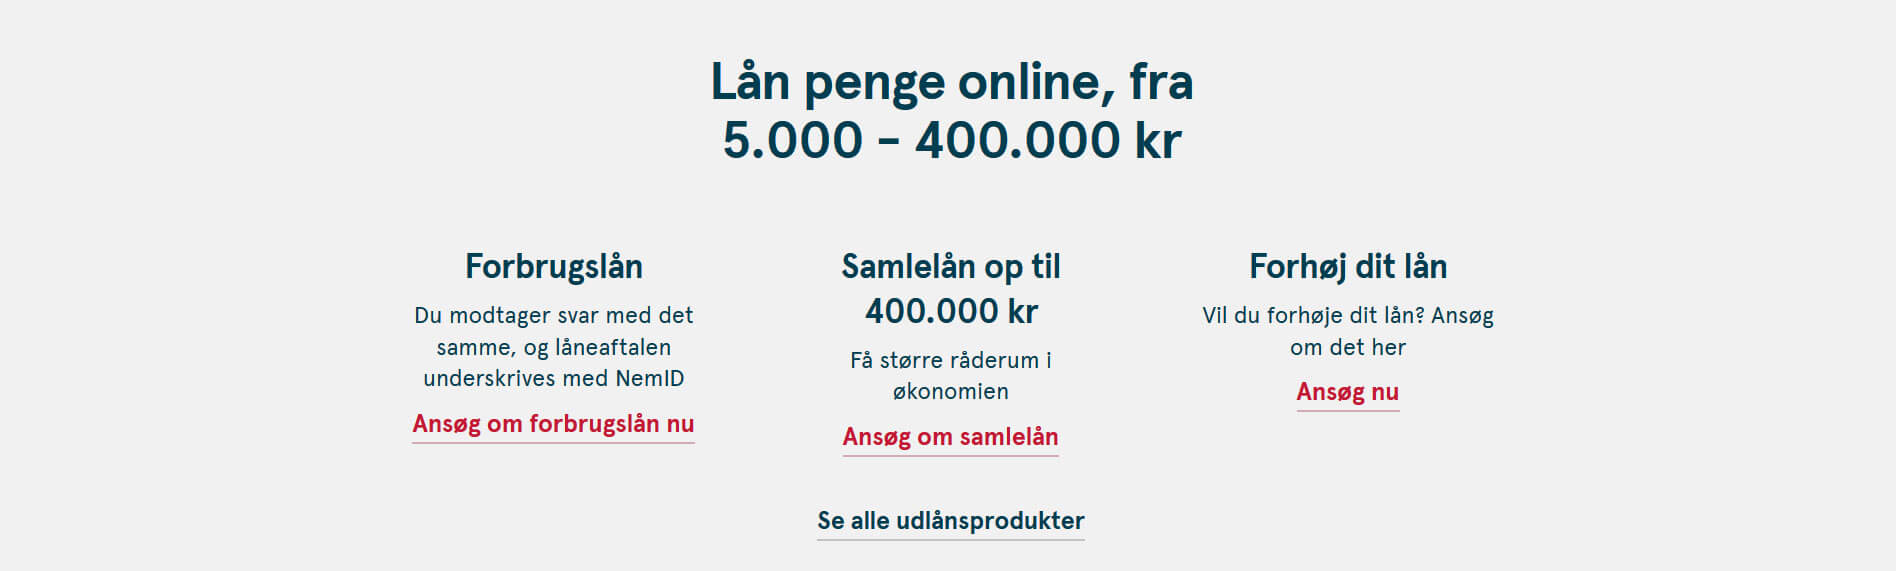 lån penge hos bank norwegian